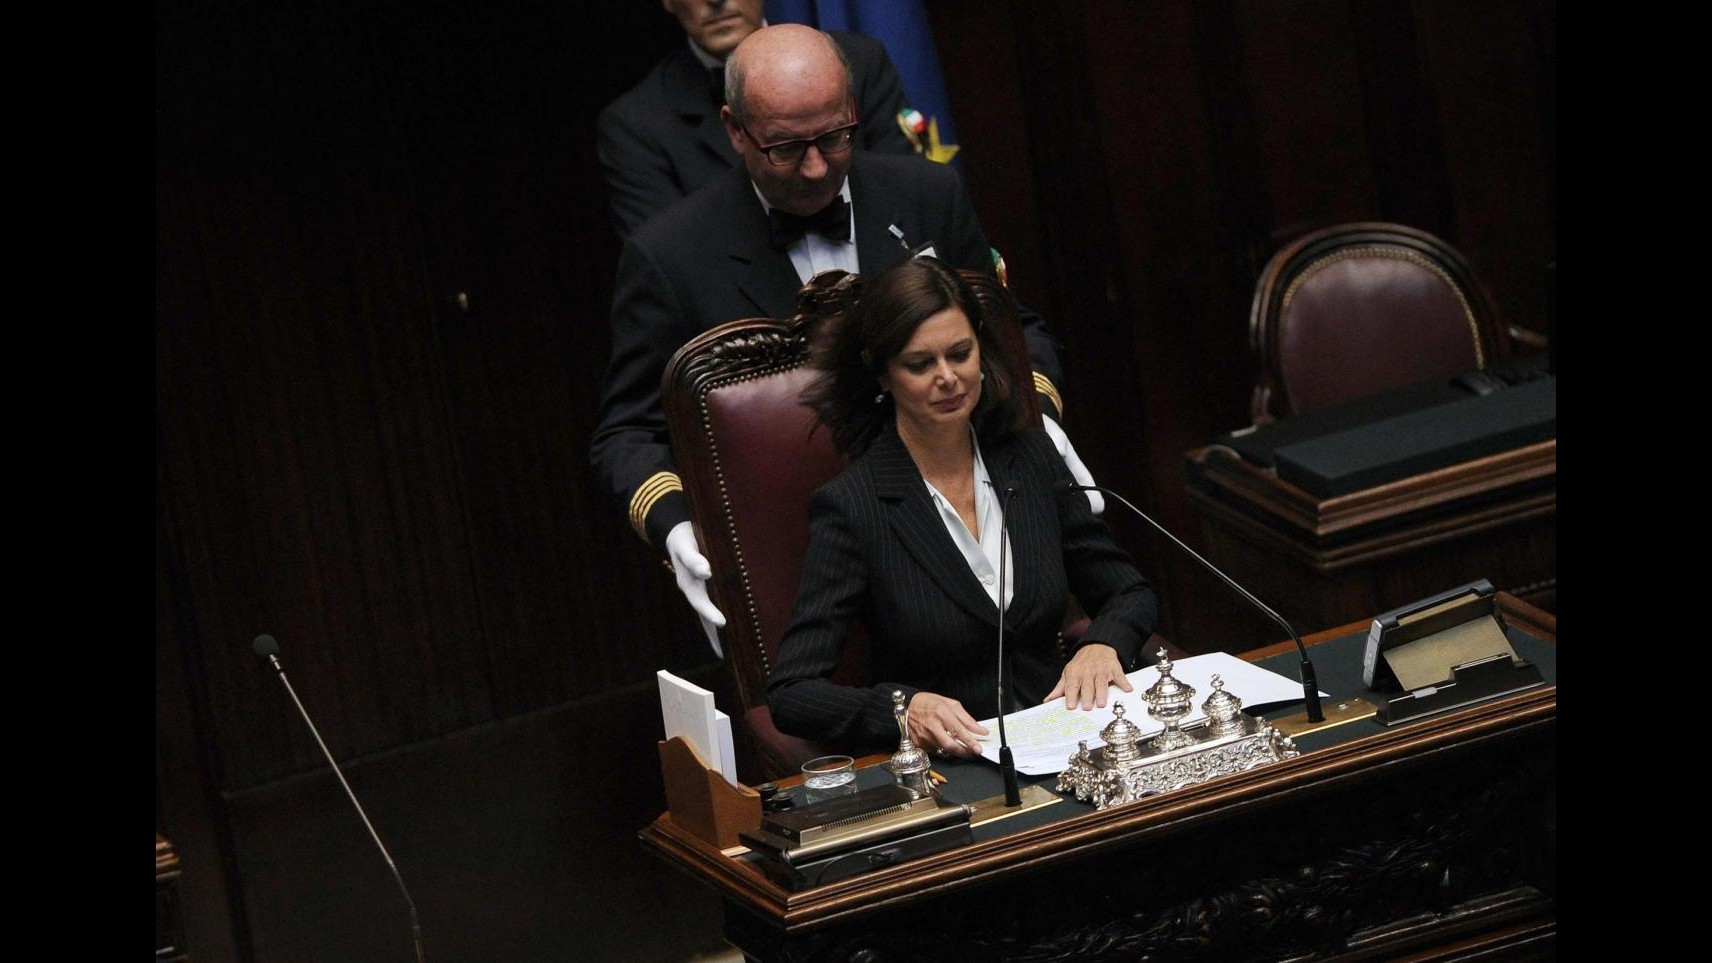 Virna Lisi, Boldrini: Antidiva libera e coraggiosa, ci mancherà